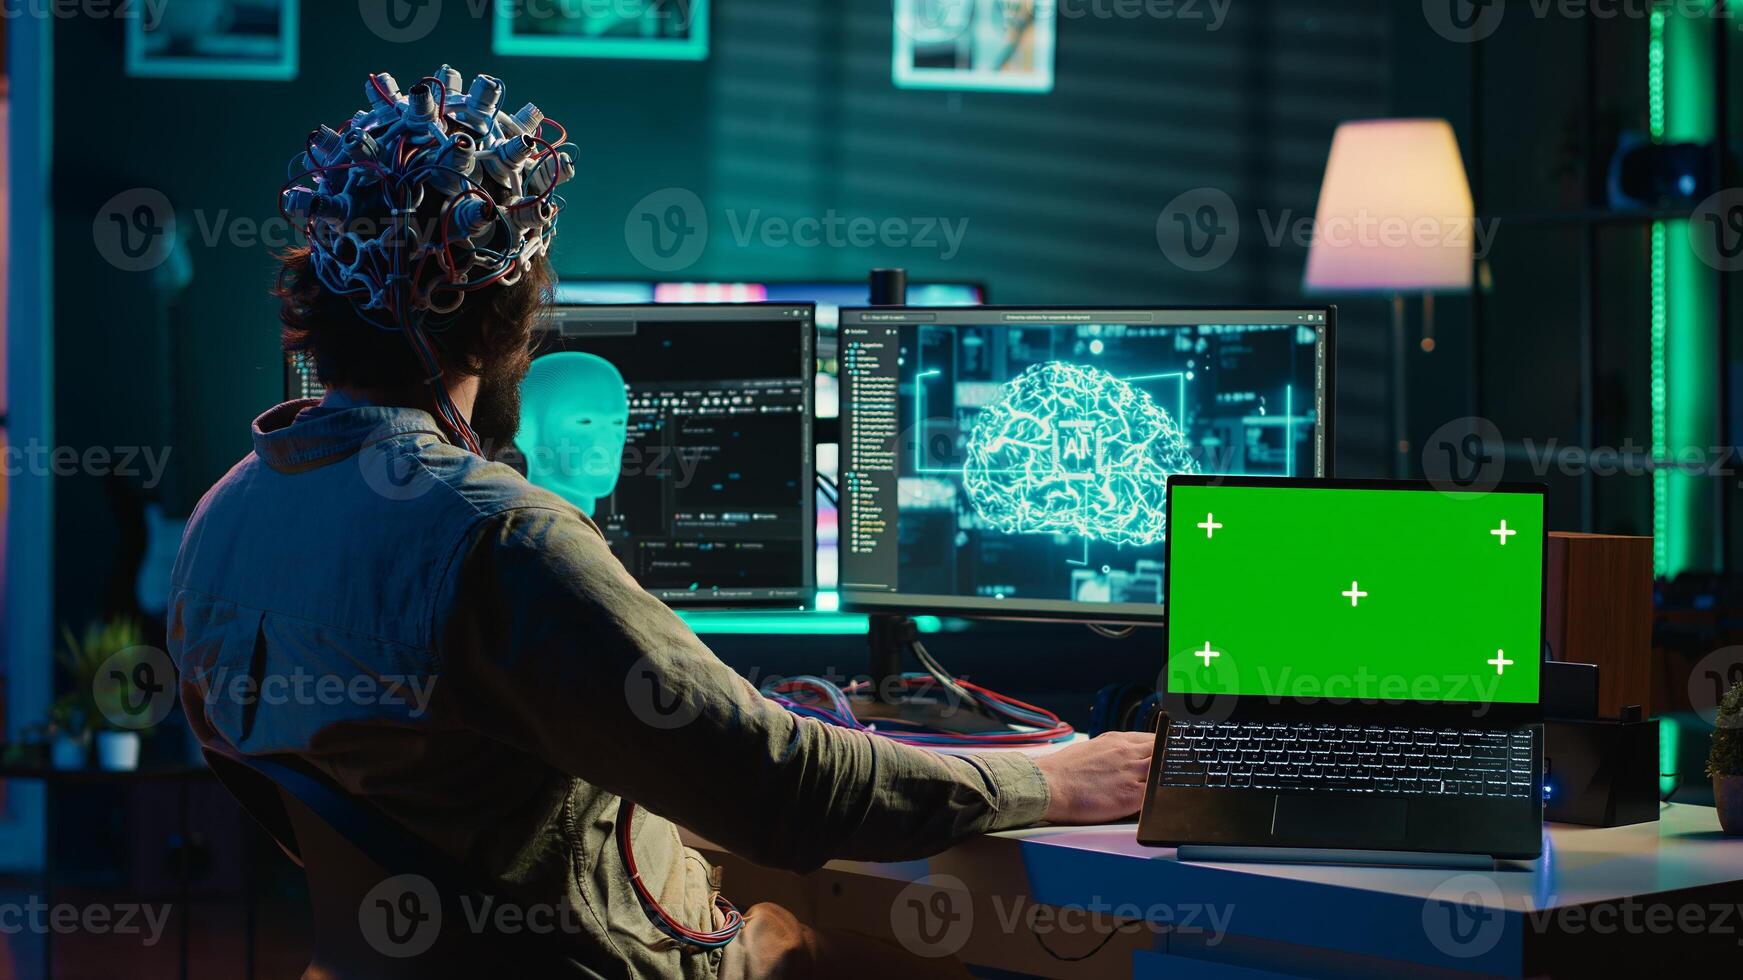 den administration kodning och använder sig av eeg headsetet till ladda upp hjärna in i grön skärm bärbar dator, få odödlighet. hjärnforskare teknik transhumanism experimentera på krom nyckel enhet, kamera en foto